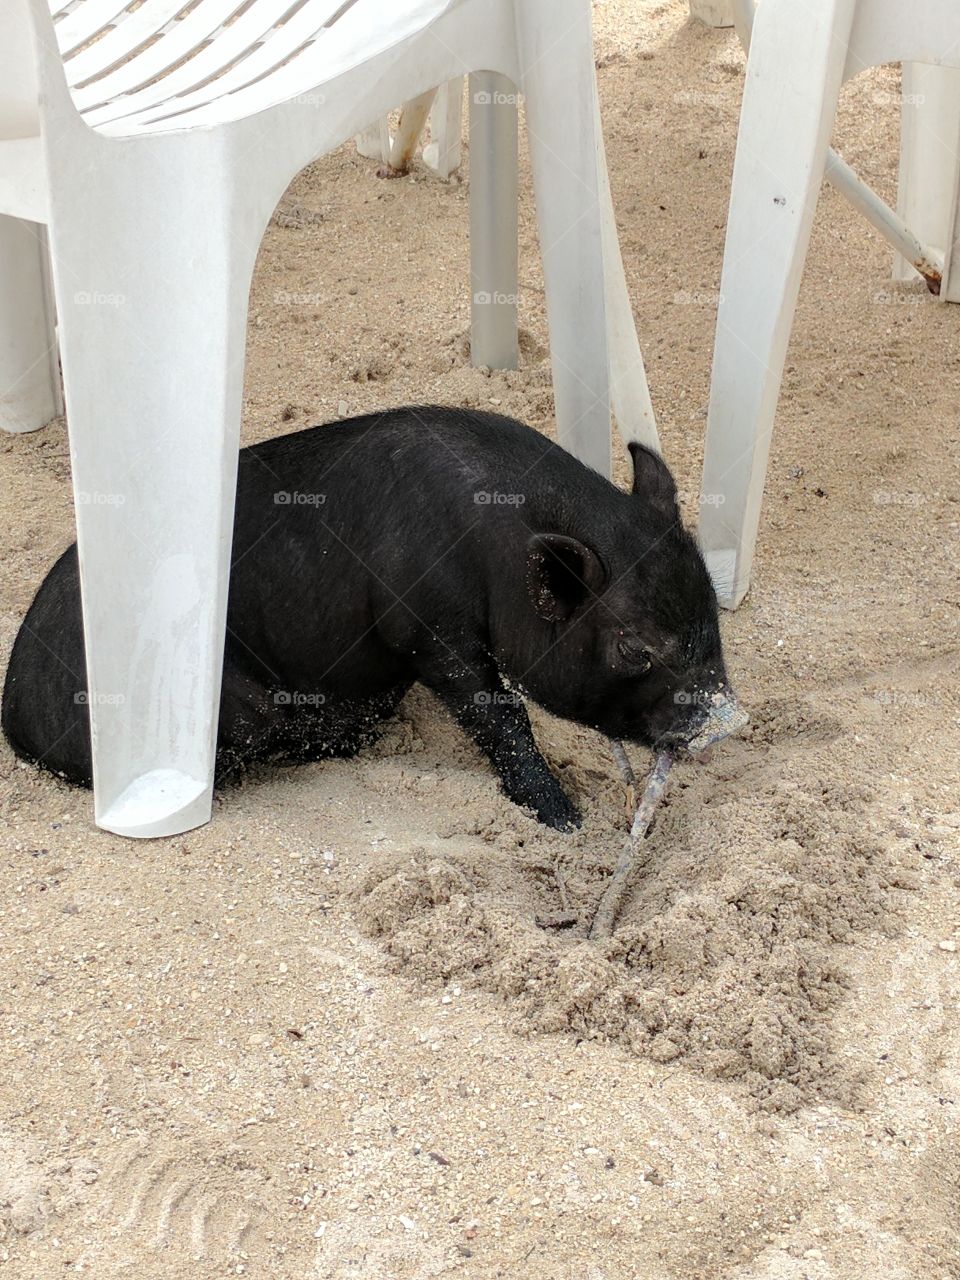 pot belly pig eating a stick